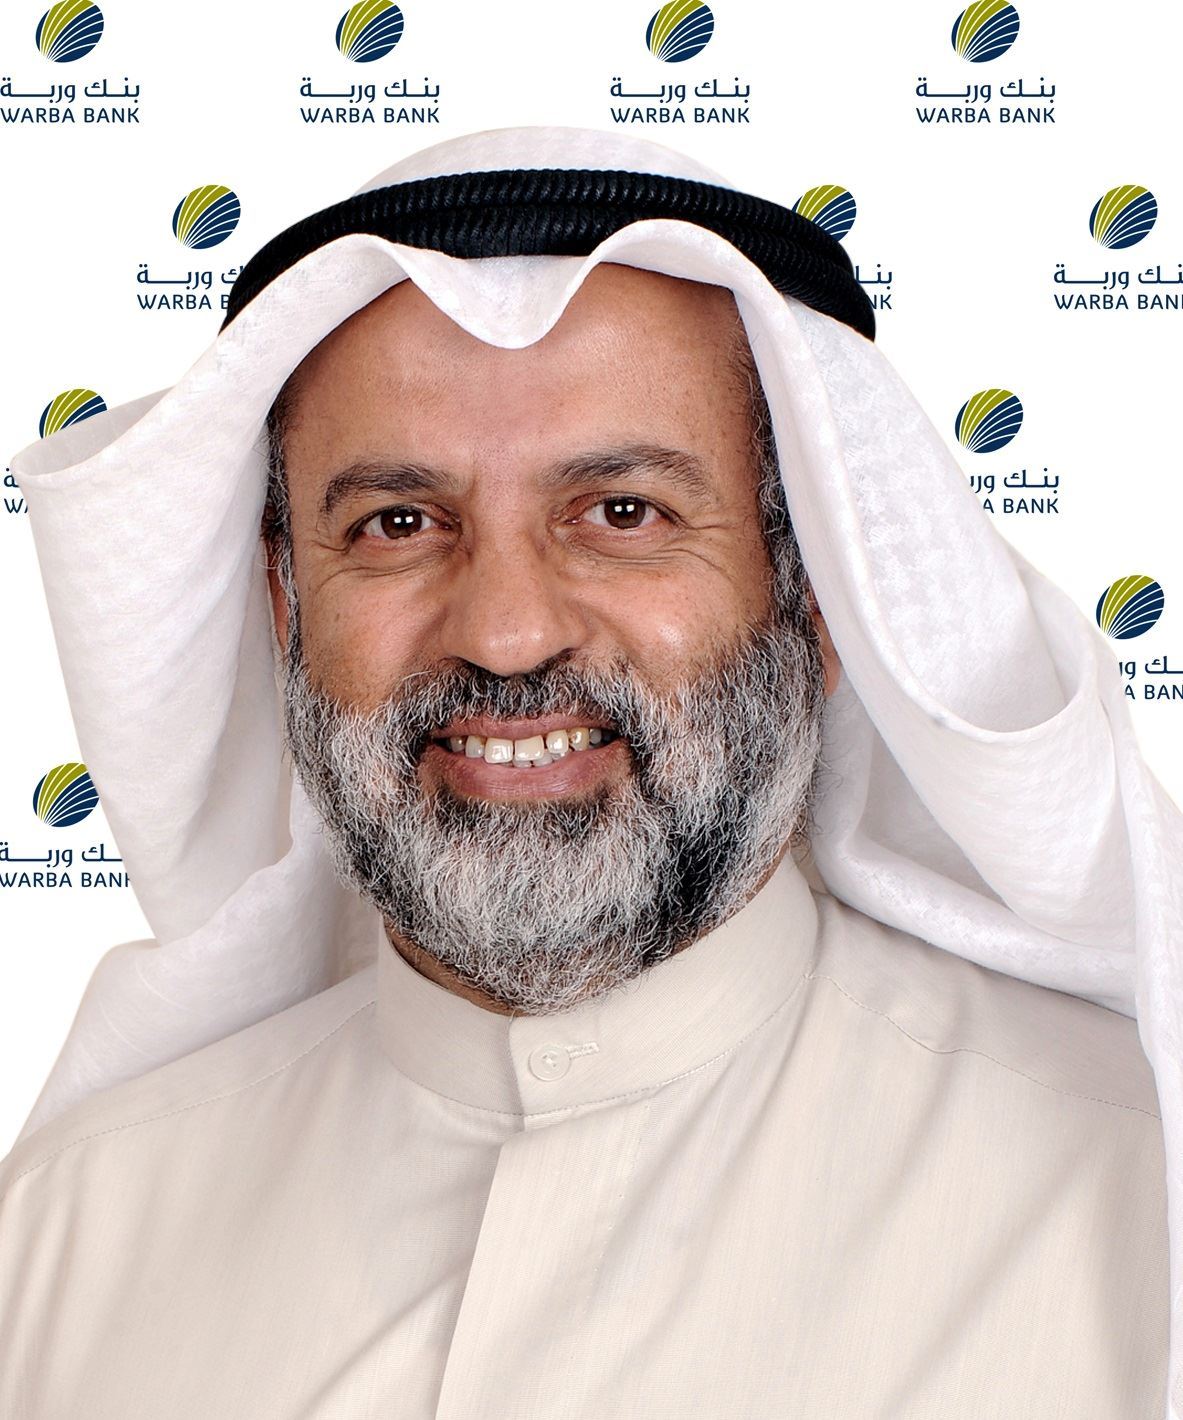 Mr. Abdulwahab Abdullah Al-Houti, Warba Bank Board Chairman